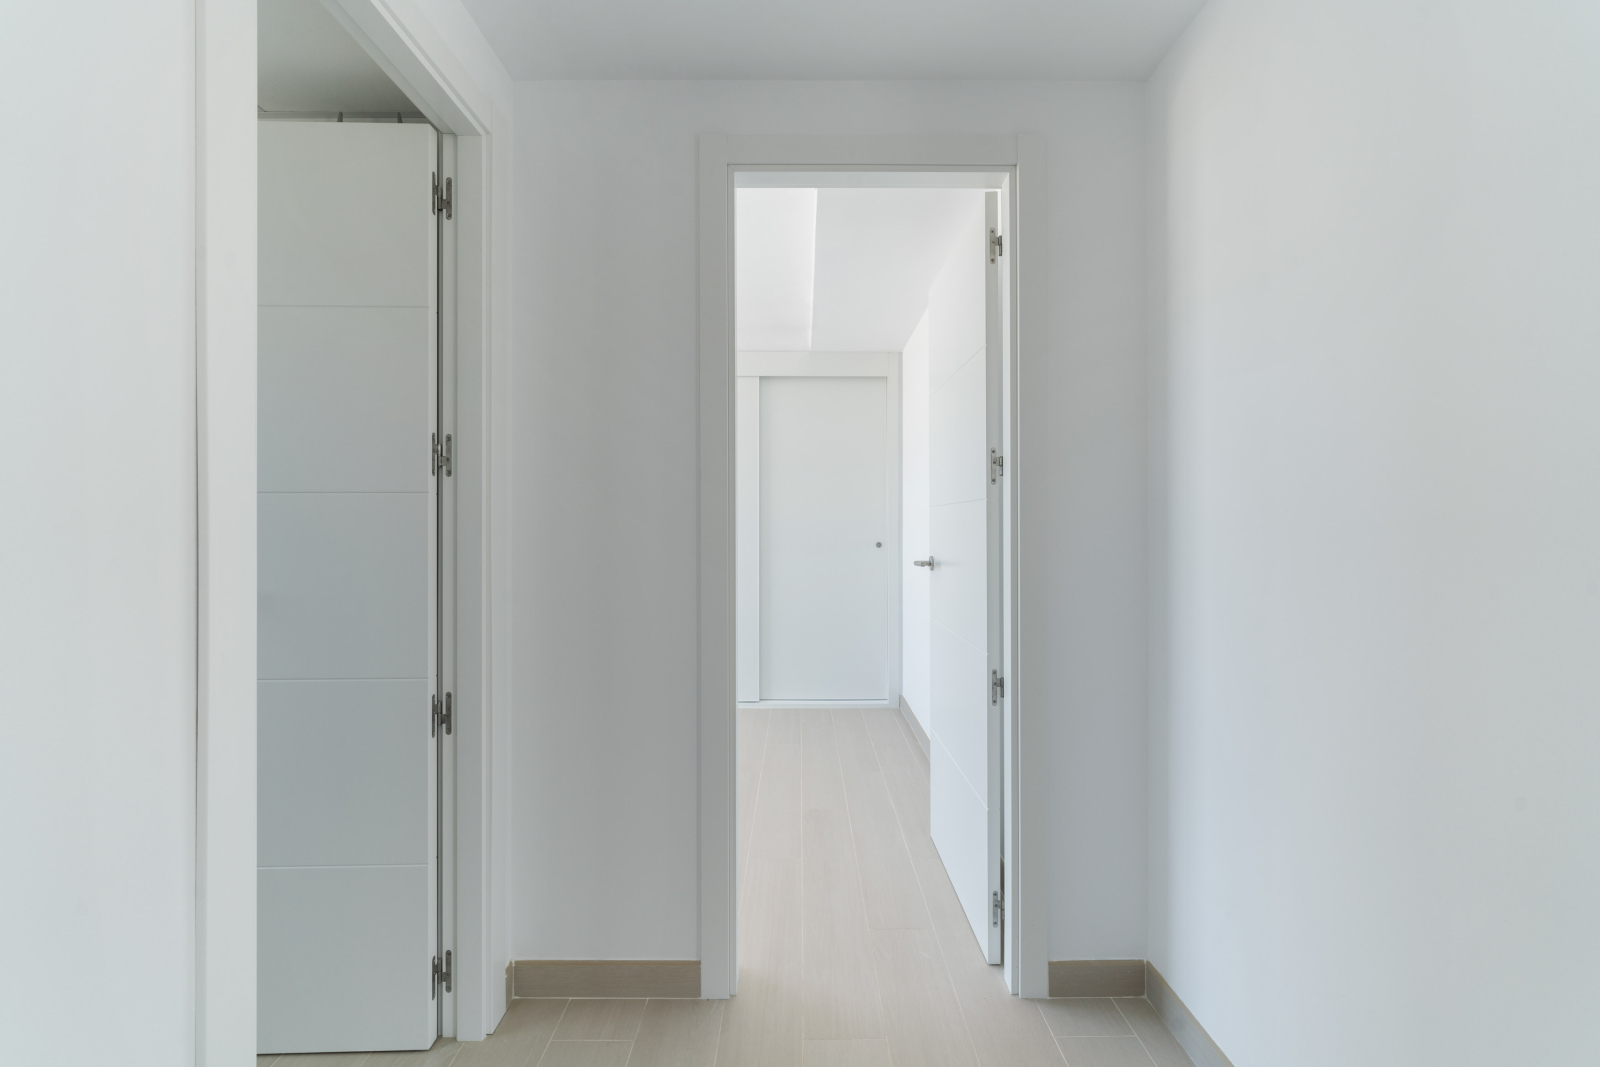 Apartamento de obra nueva de dos dormitorios en Vergel